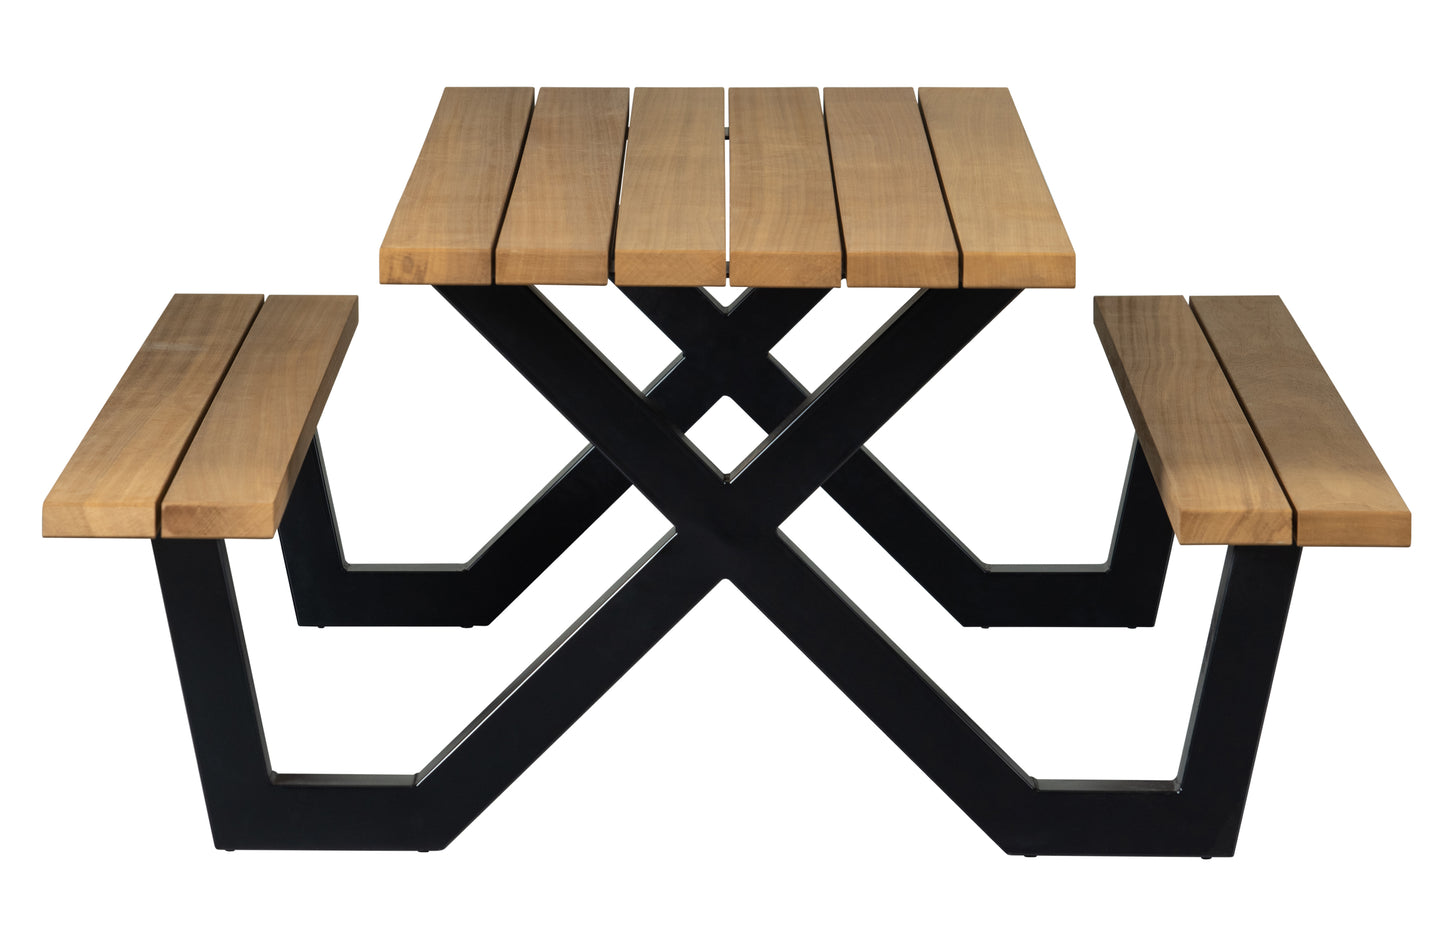 HOLZ | Tablo Picknick im Freien – Esstisch, Holz mit X-Bein Metall [fsc]